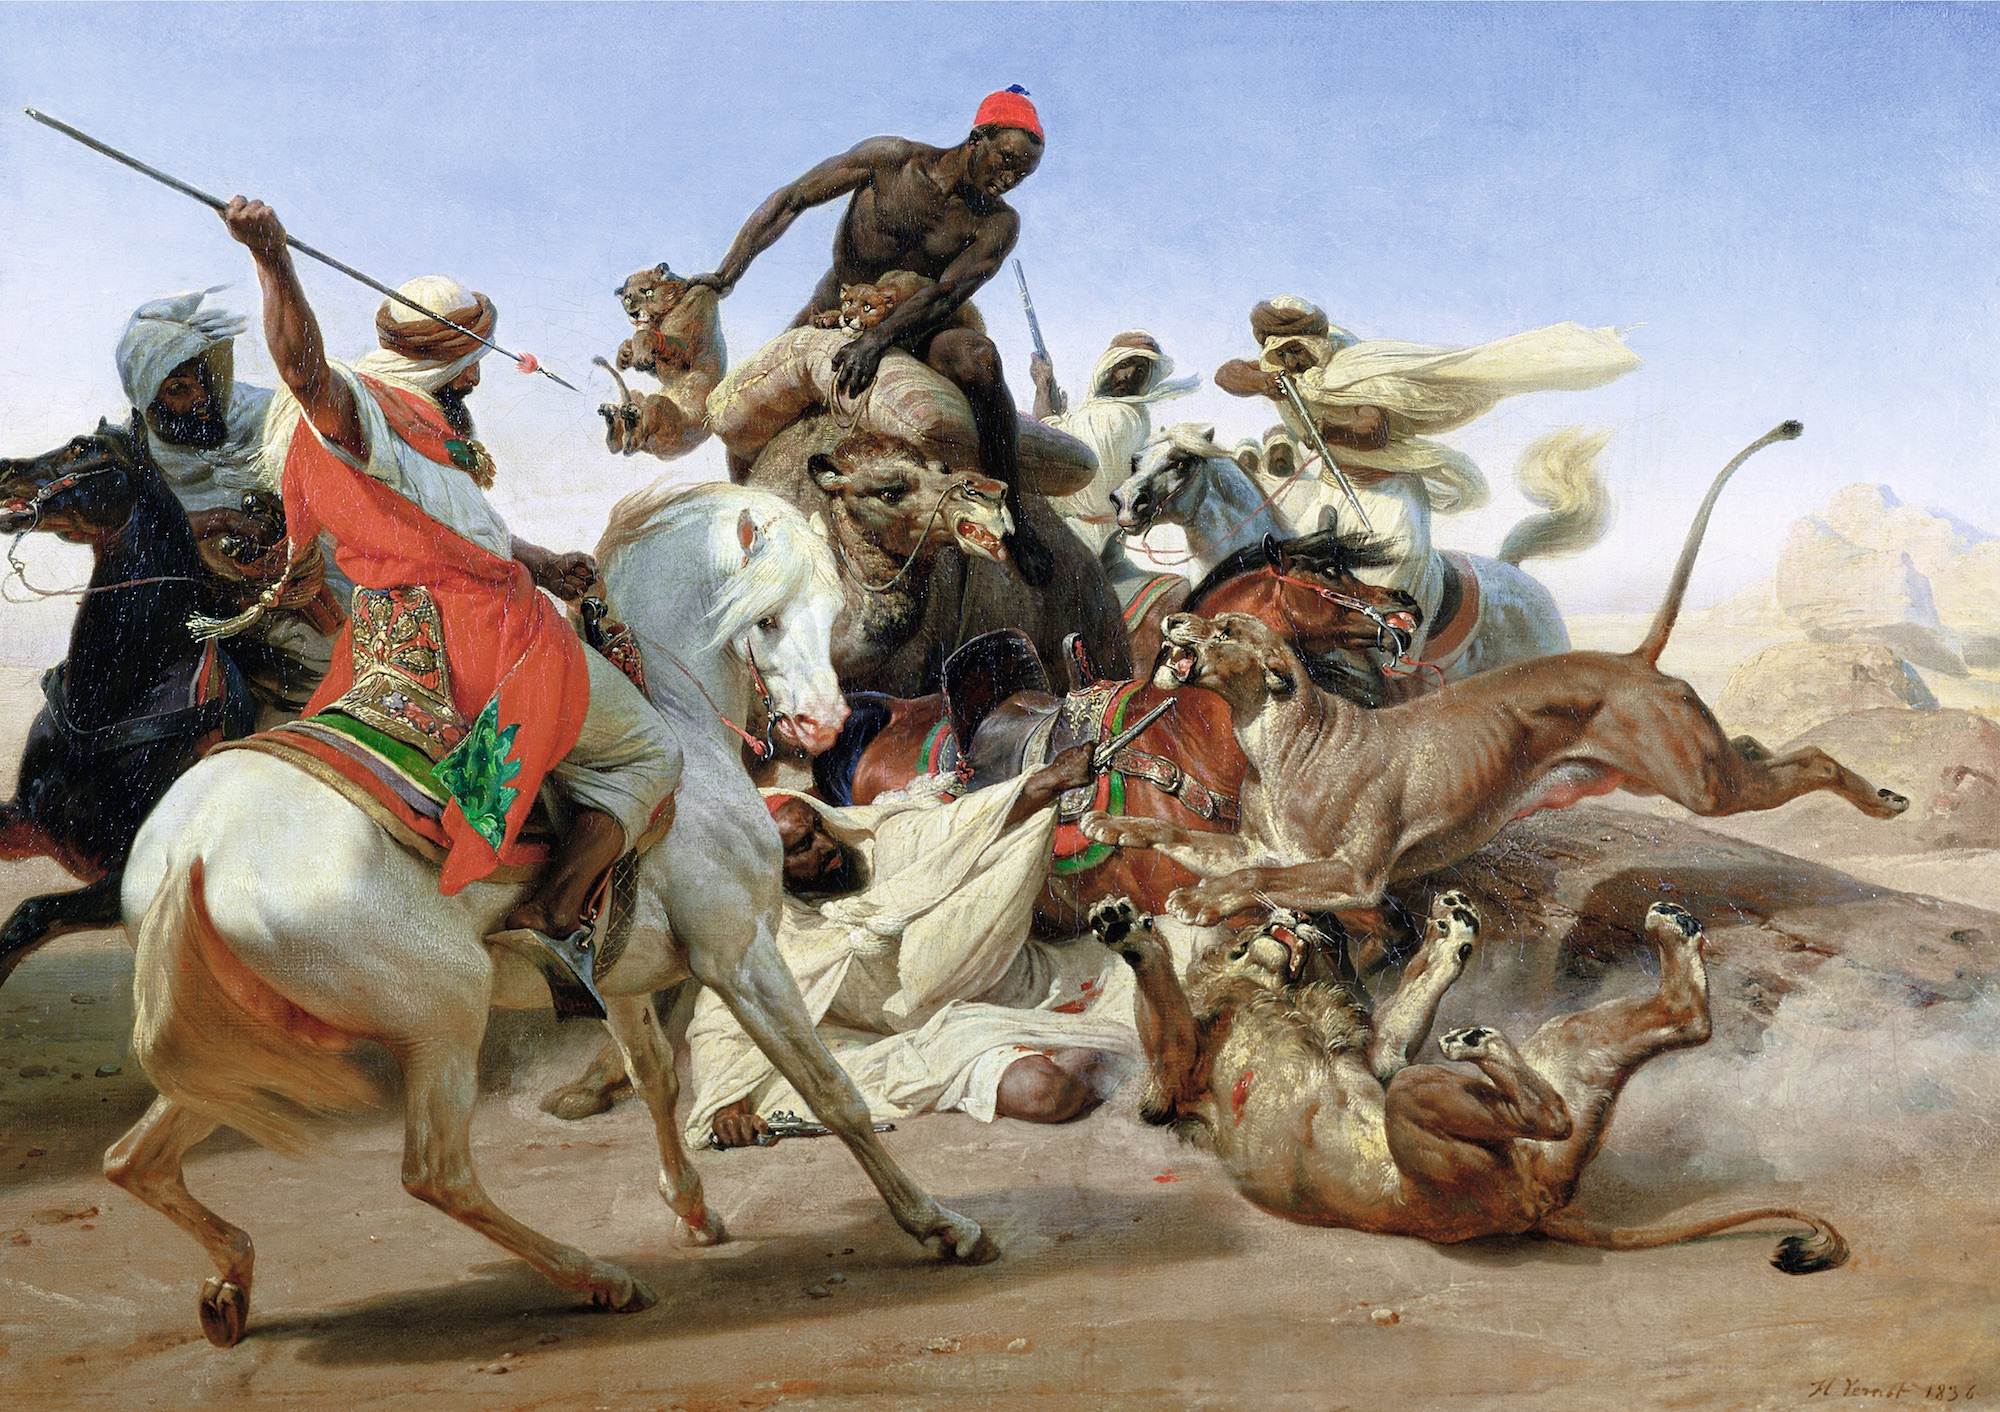 Horace Vernet (1789-1863), La Chasse au lion au Sahara, 1836. Huile sur toile, 57,1 x 81,7 cm. Londres, The Wallace Collection. © The Wallace Collection, London / Bridgeman Images